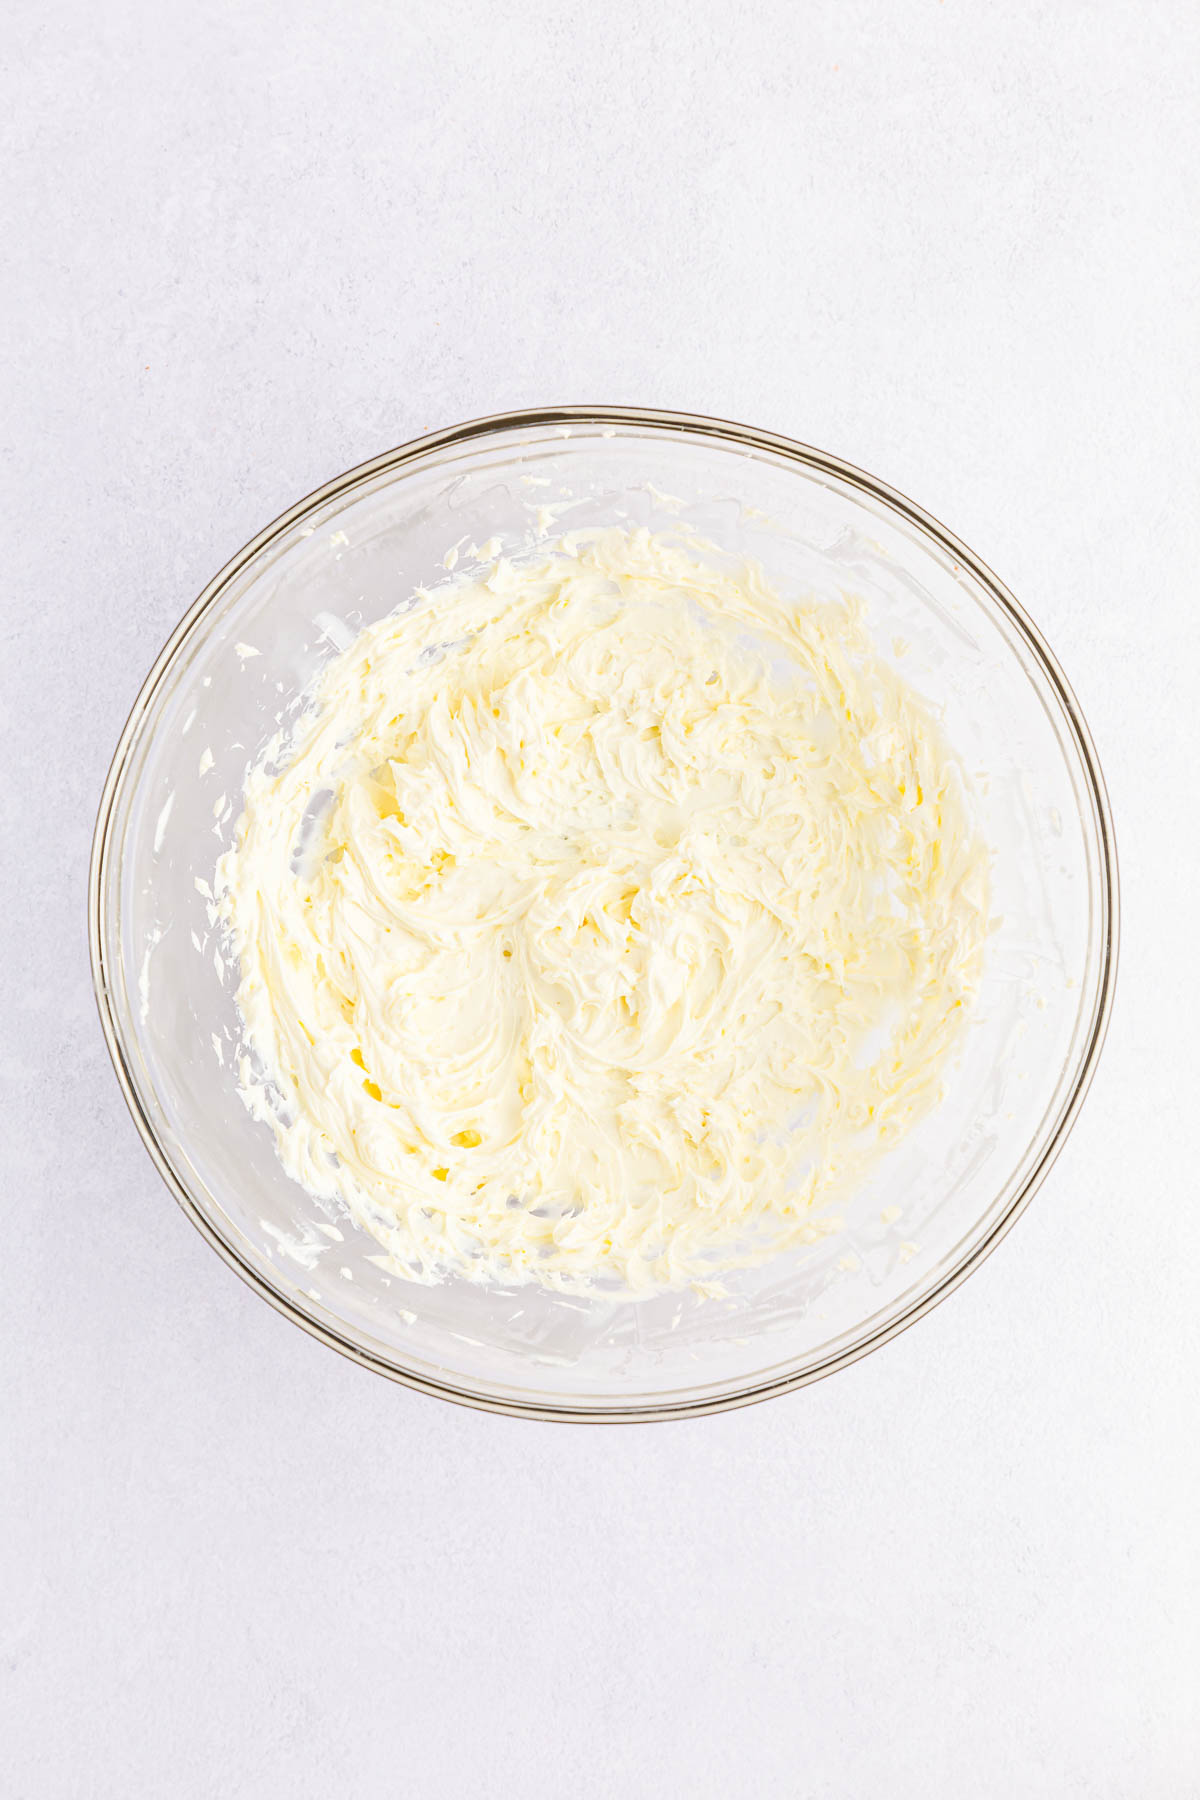 Soften cream cheese beaten in bowl